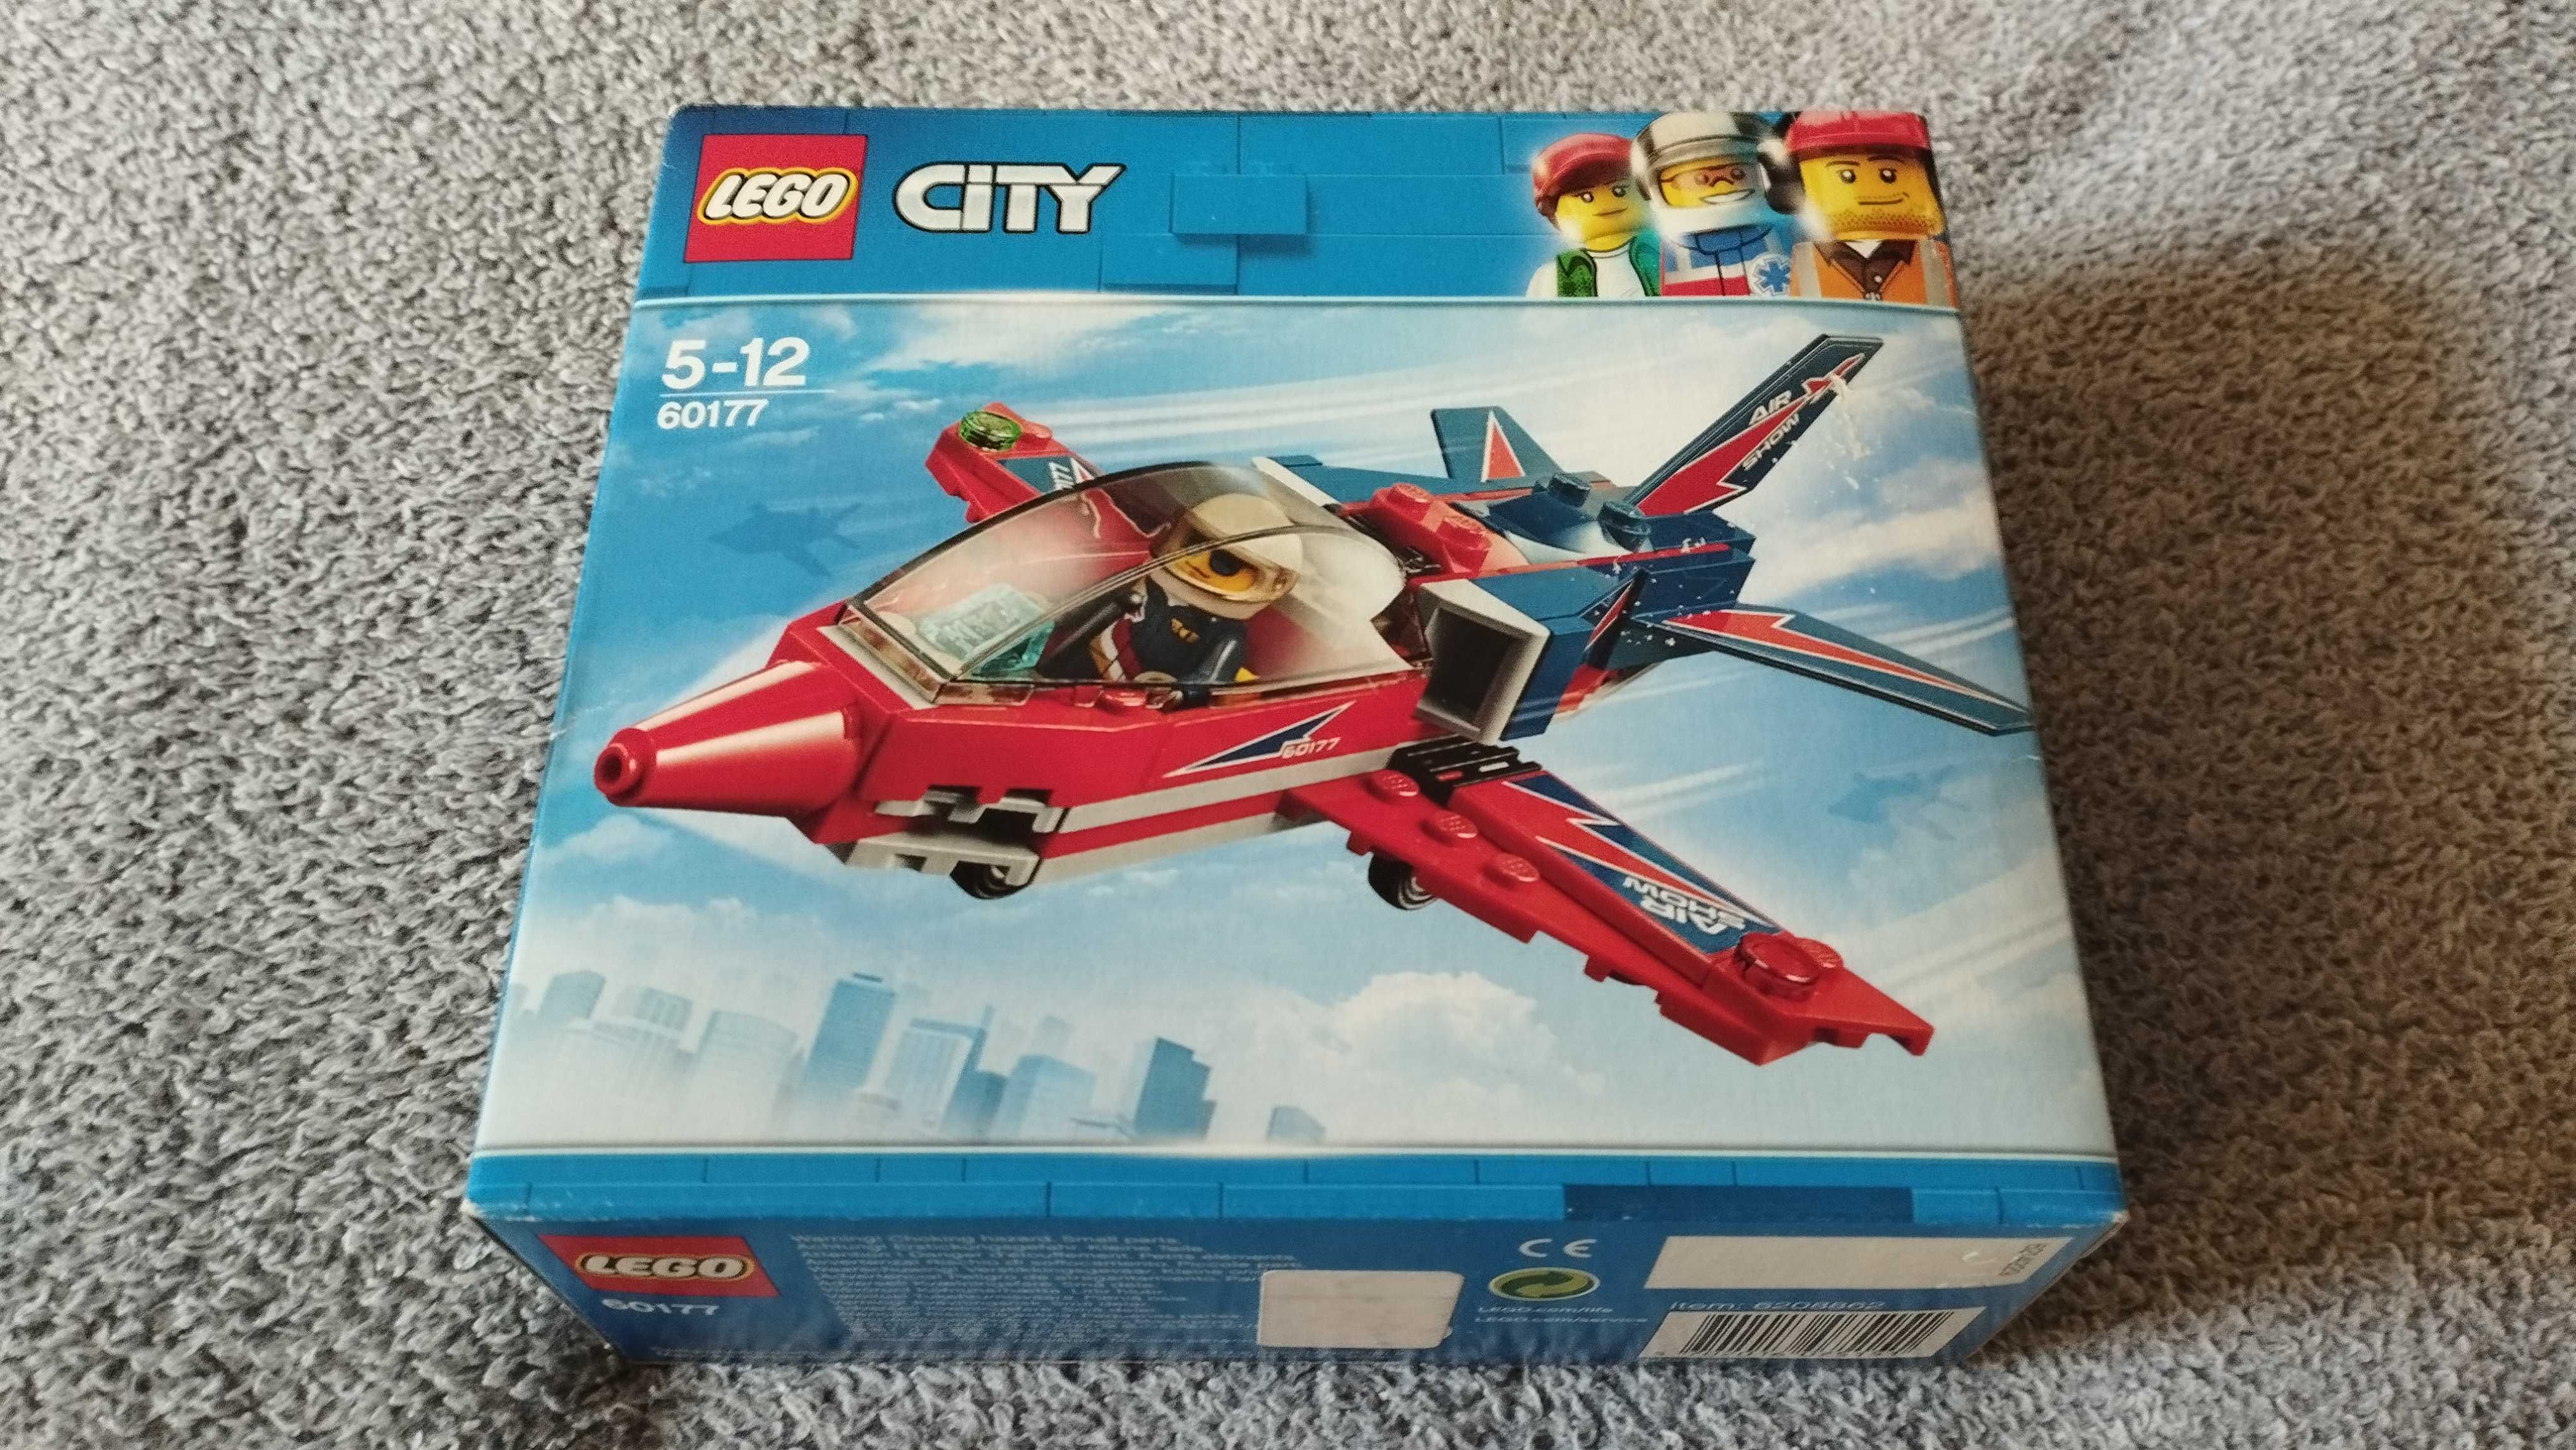 Klocki LEGO CITY 5-12 lat